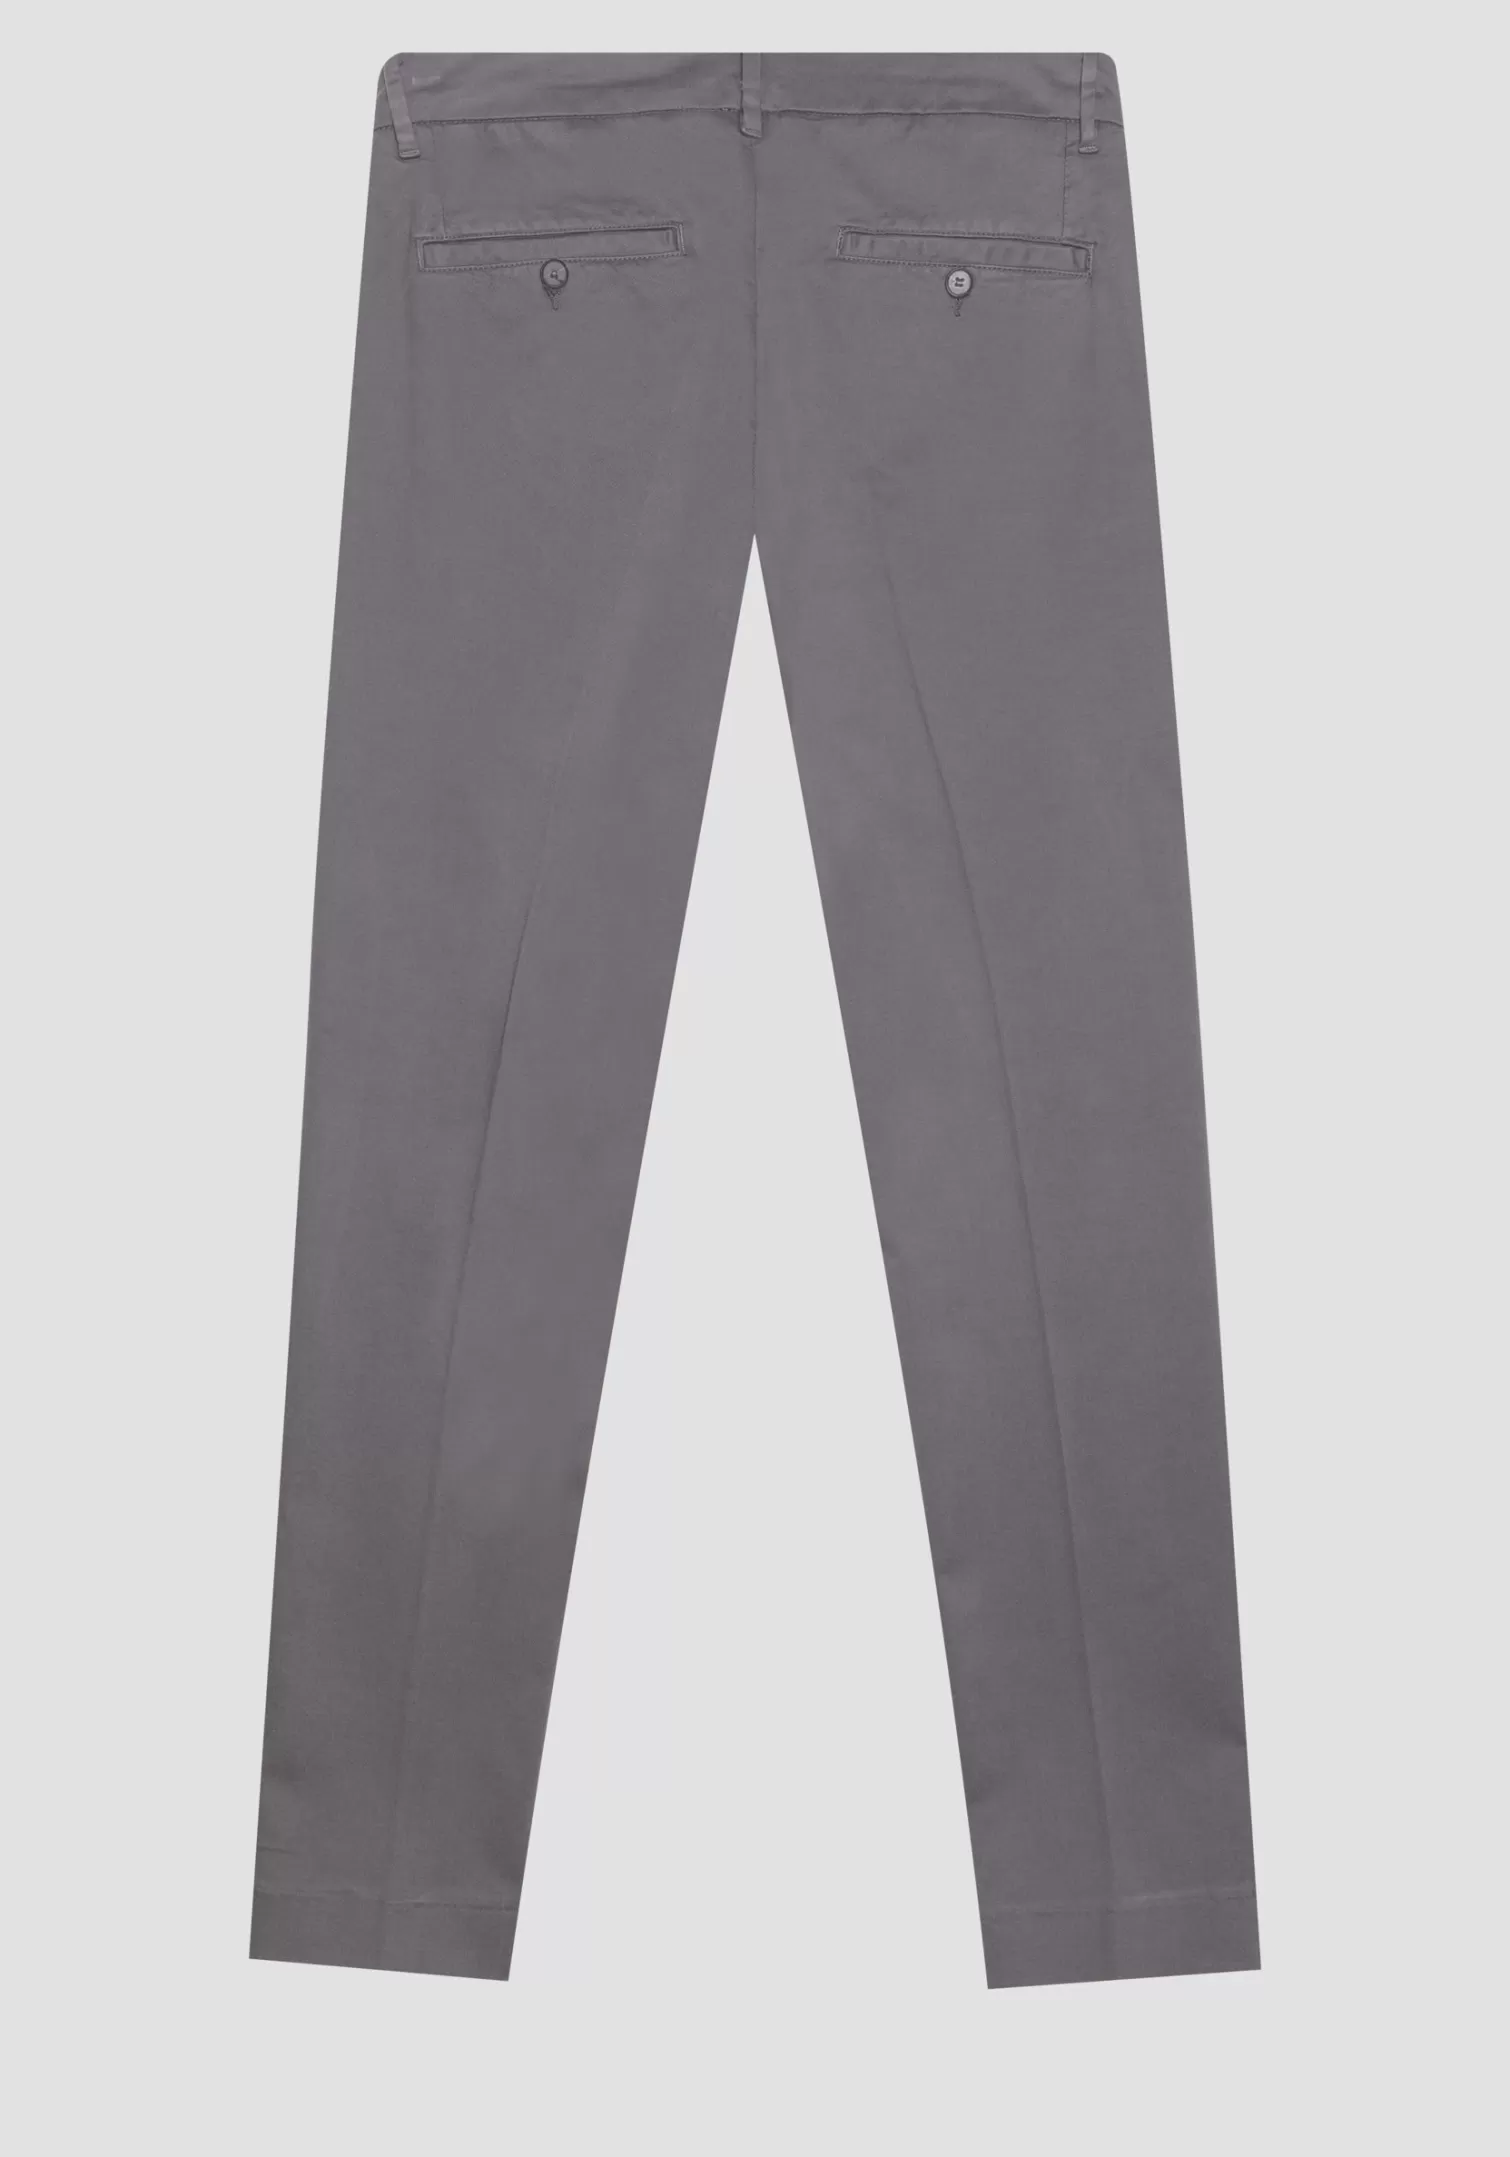 Pantaloni>Antony Morato Pantaloni Bryan Skinny Fit In Cotone Elastico Micro Armaturato Antracite